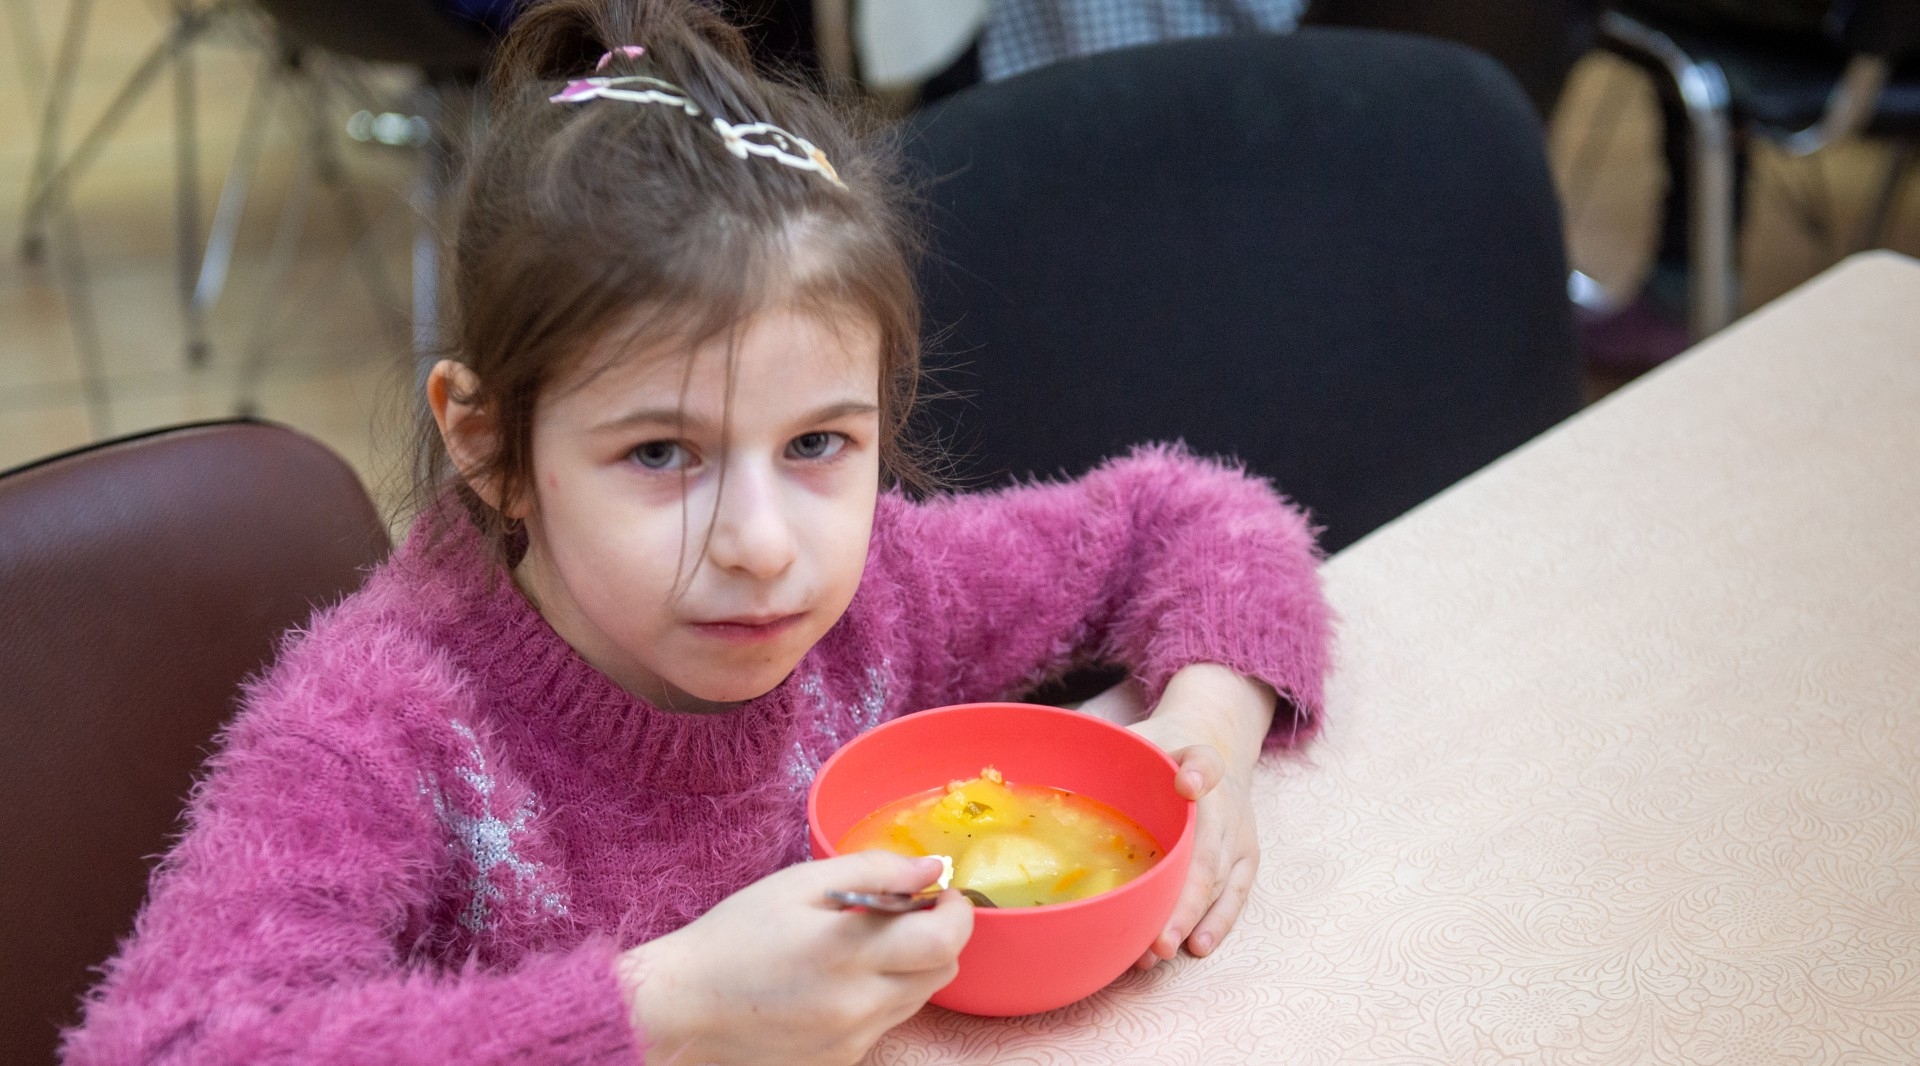 כשמלחמת אוקראינה נכנסת לשנה 3, בית הילדים היהודי באודסה נאבק באתגרים חדשים